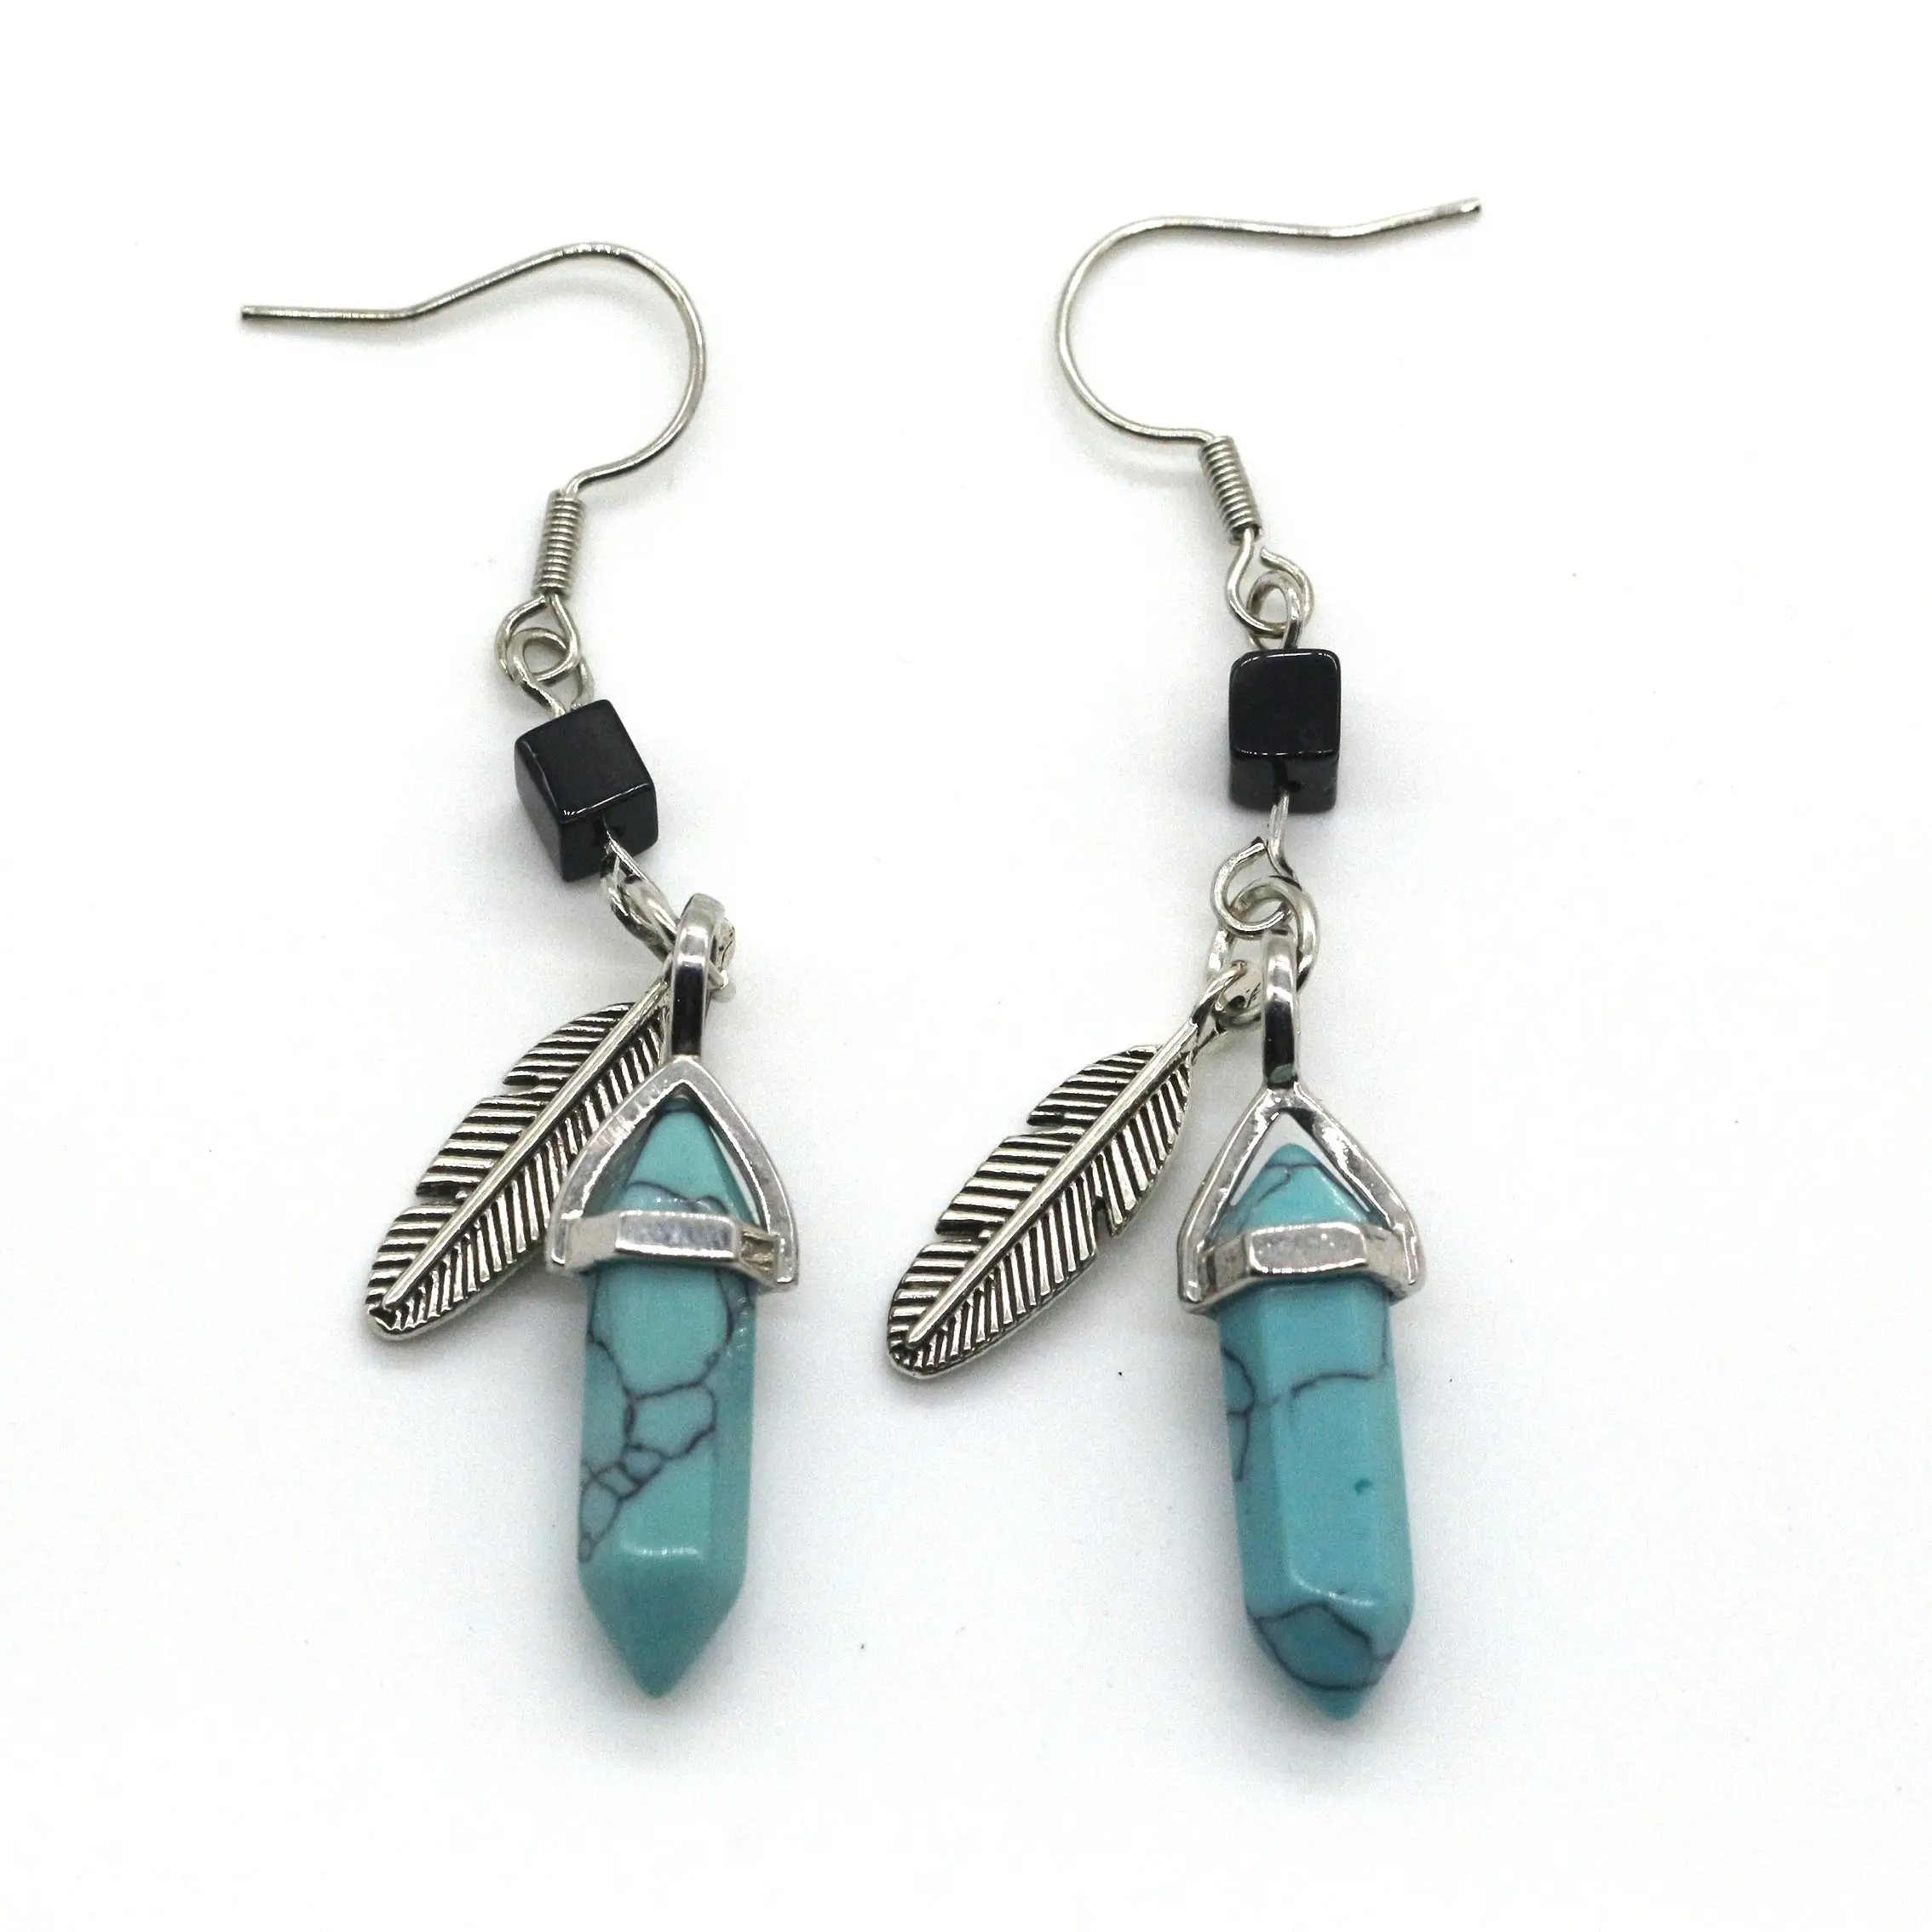 Vente en gros de boucles d'oreilles pendantes en pierre Accessoires pour femmes Boucles d'oreilles pendantes en pierre de cristal à pointe hexagonale bleu turquoise